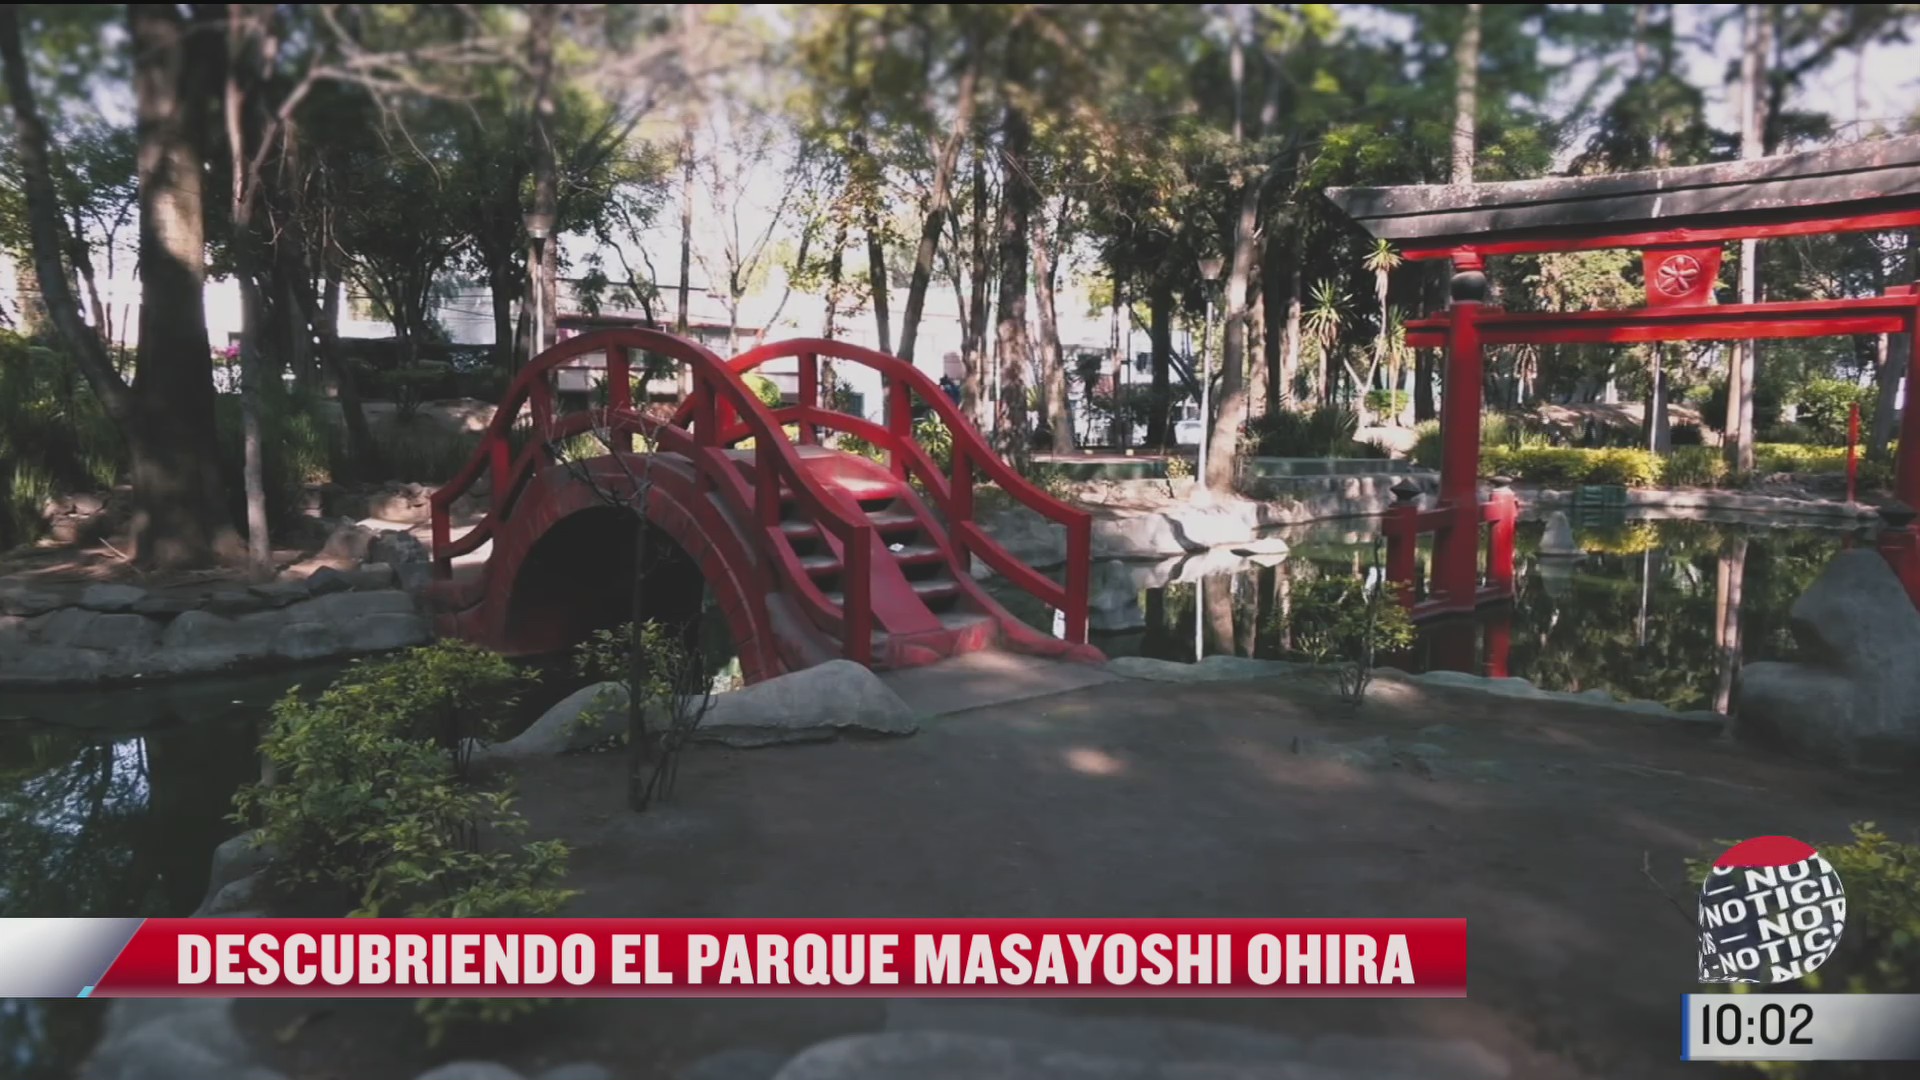 la historia del parque masayoshi ohira